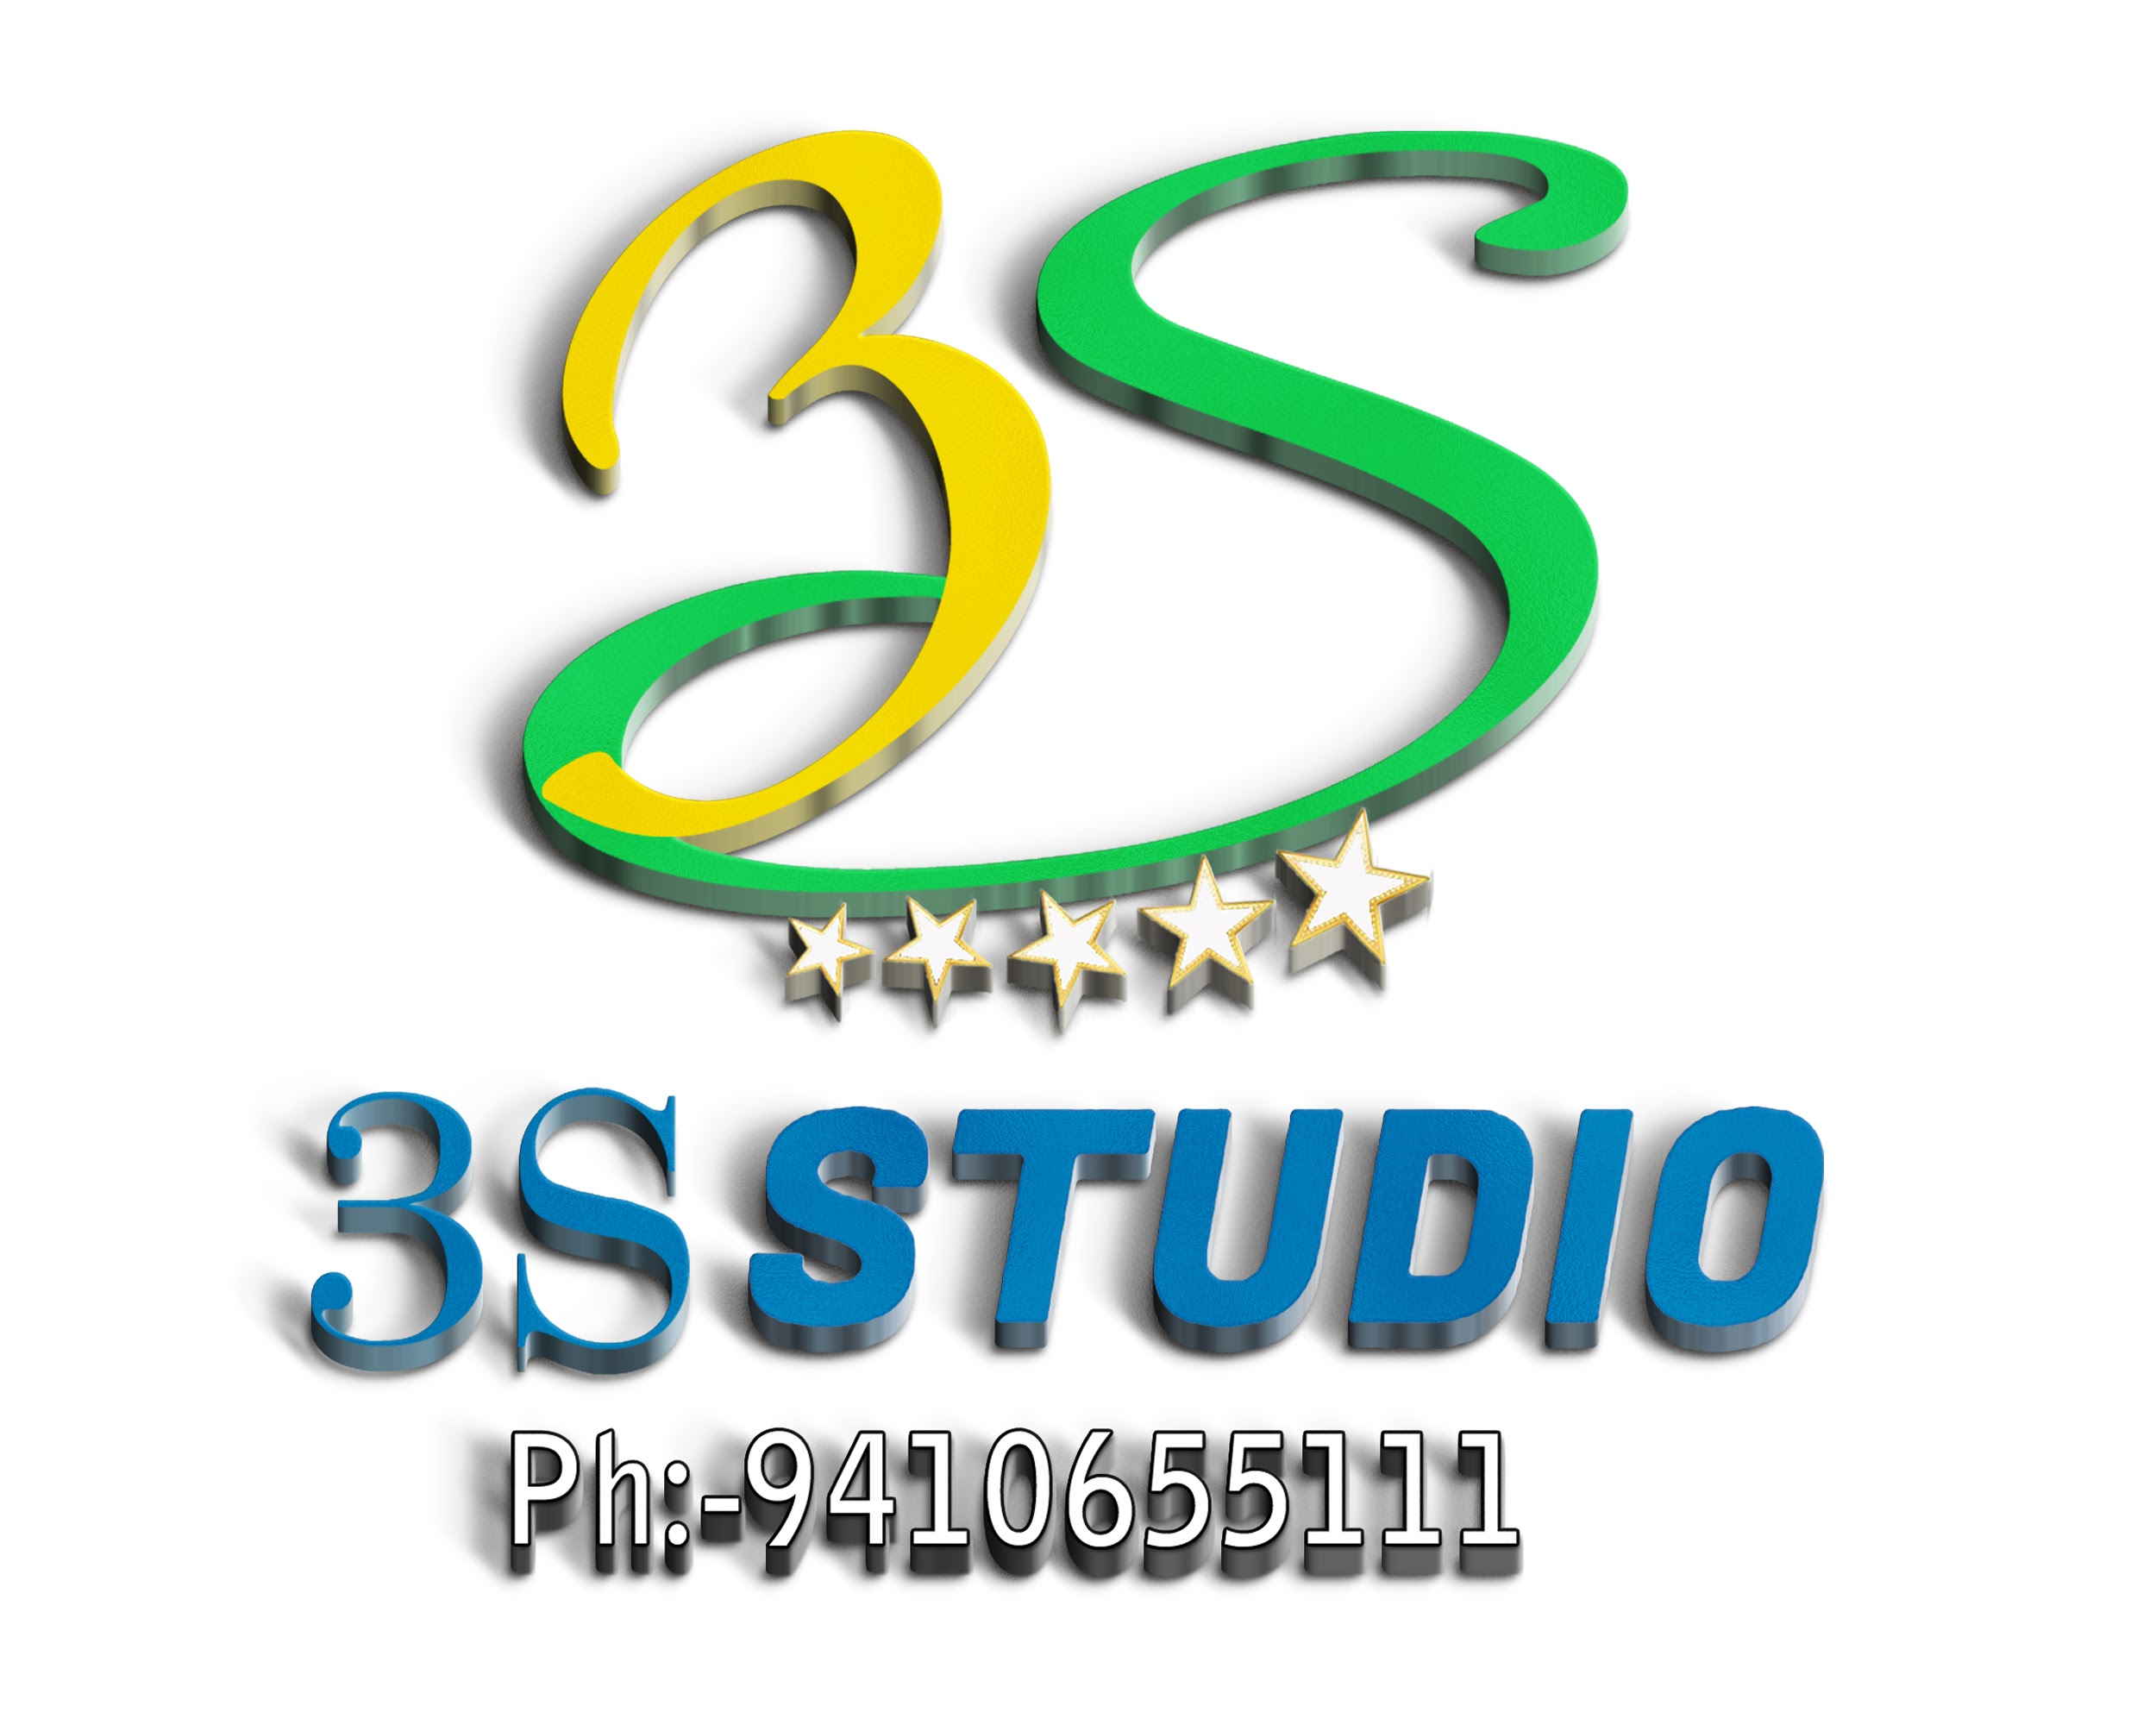 3S Studio|Photographer|Event Services